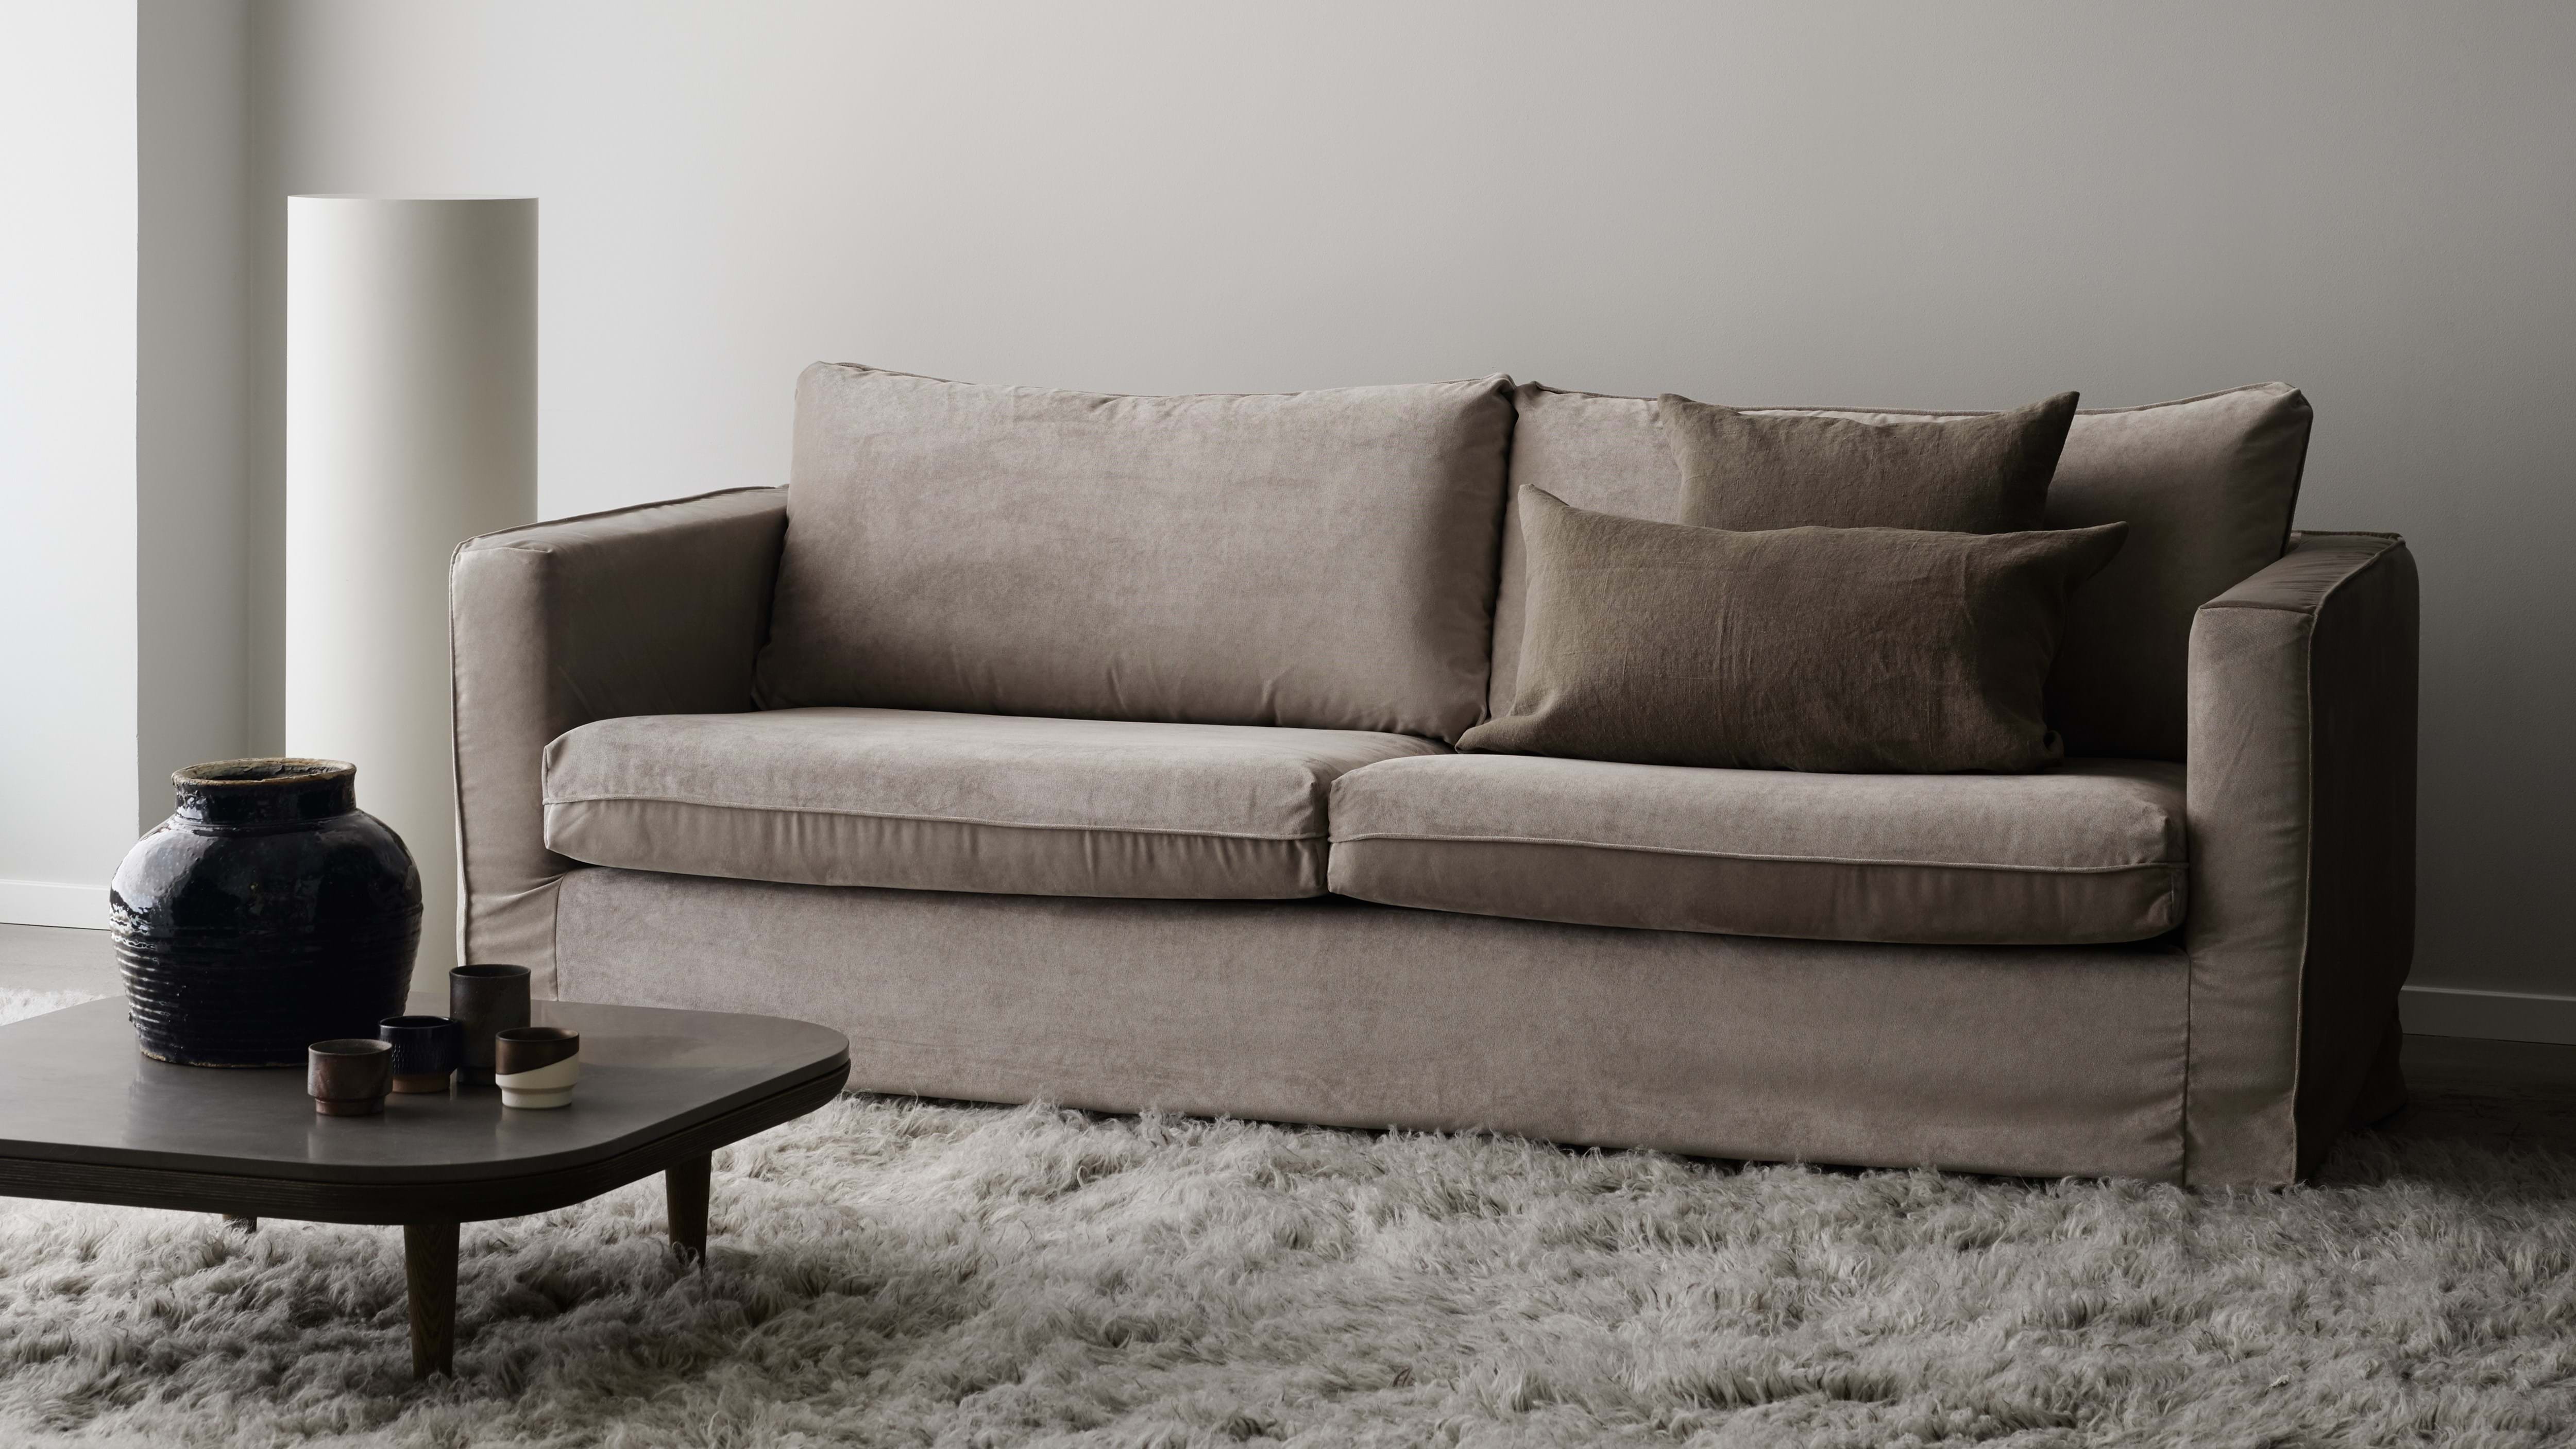 ikea karlstad tufted leather sofa